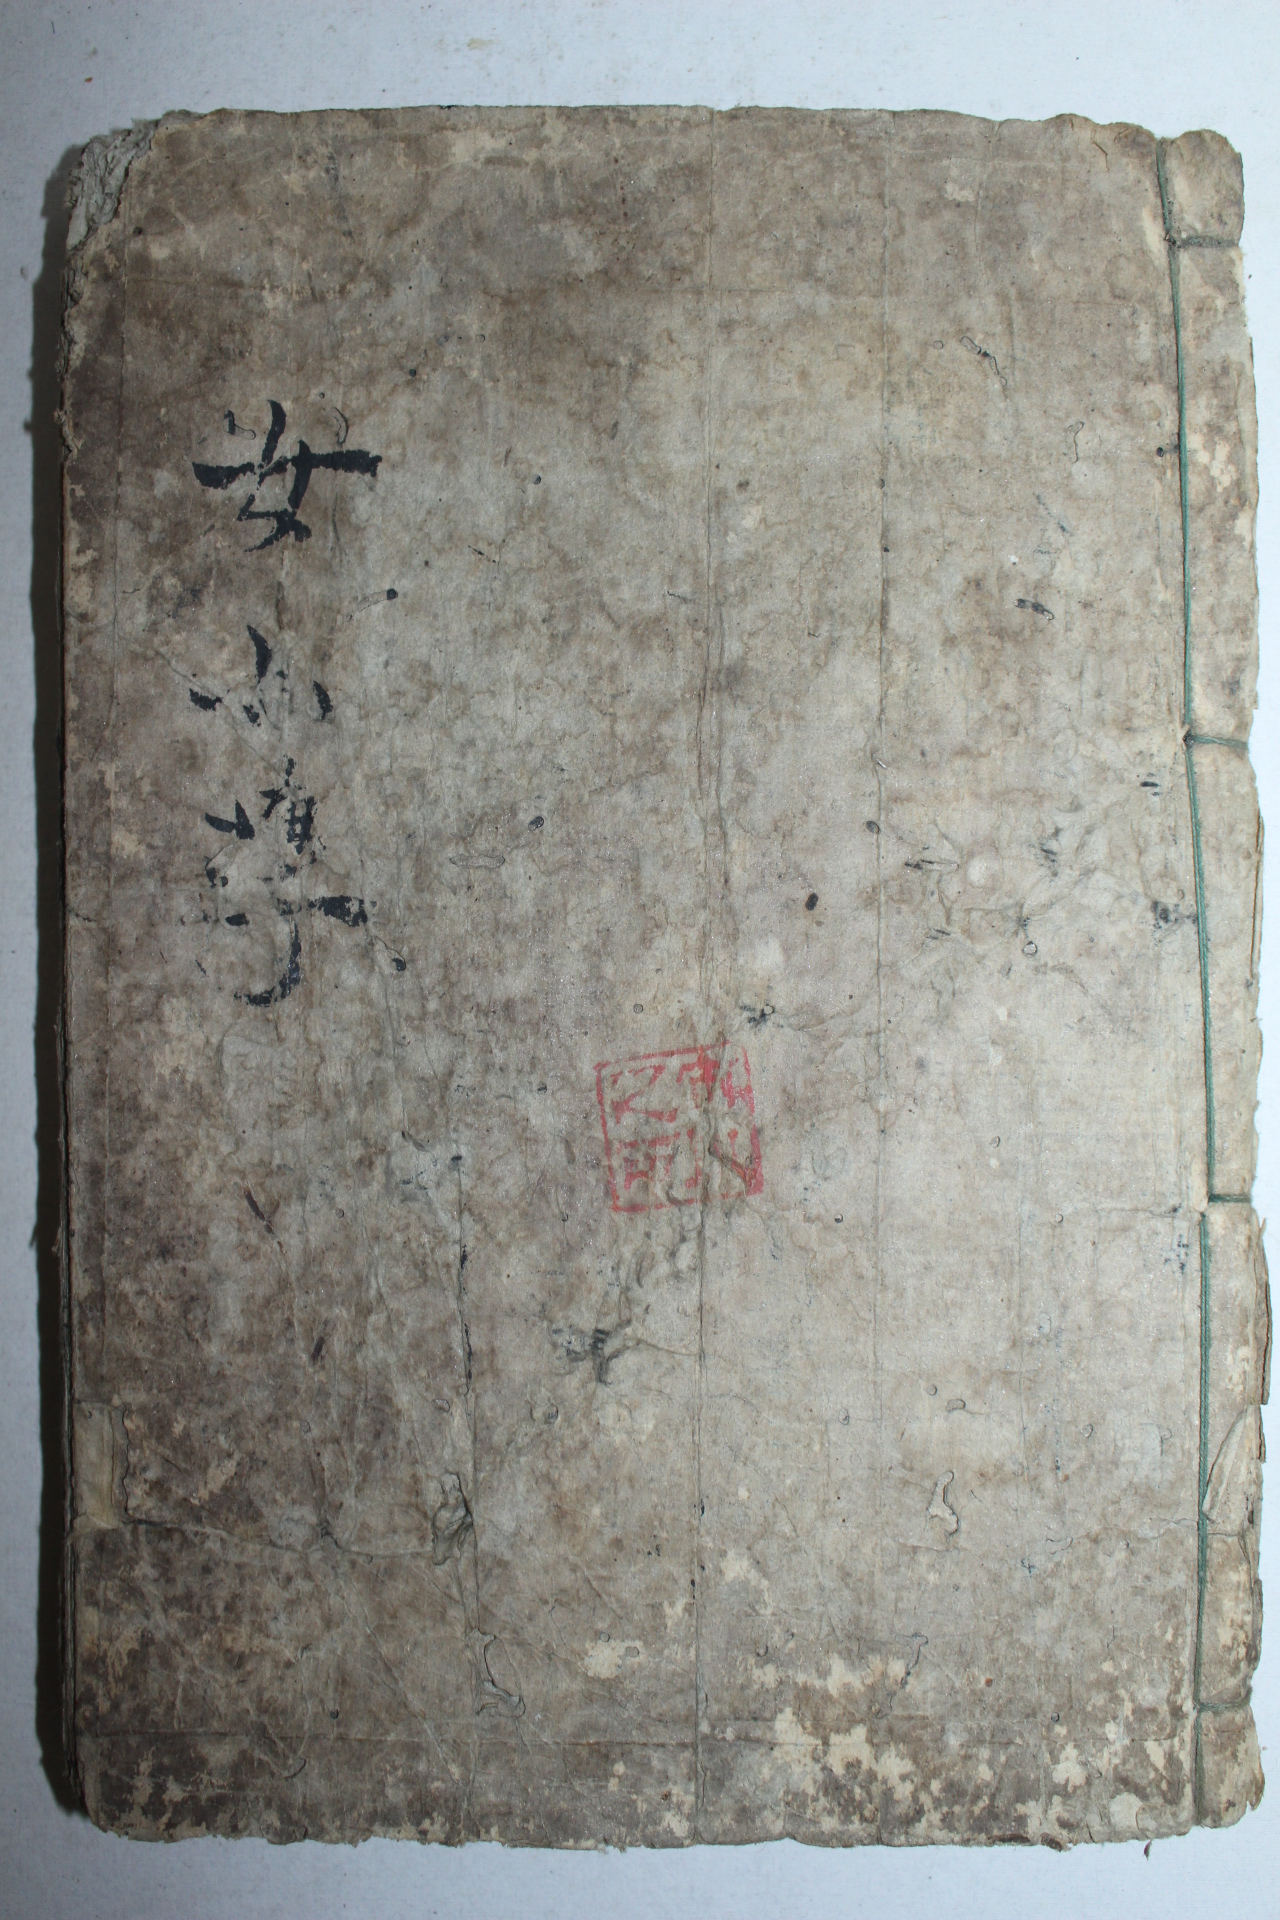 1832년(天保3年) 일본목판본 여중품정(女中品定) 문해당(文海堂)